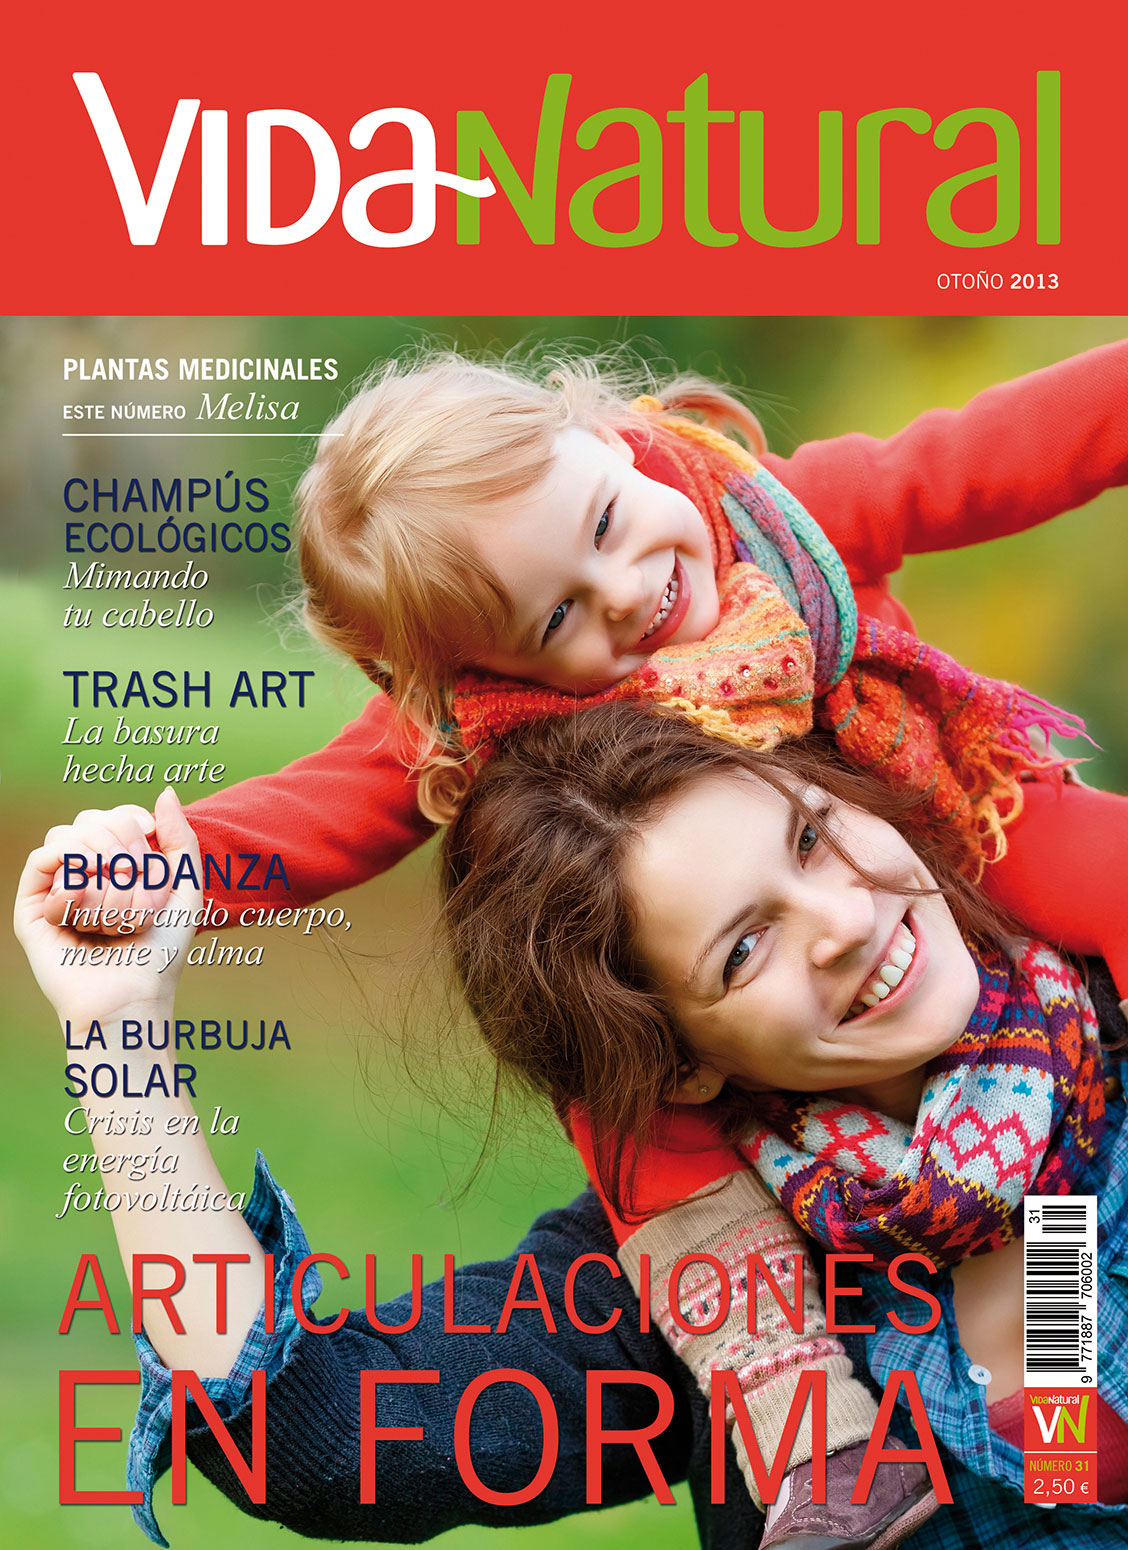 Revista Vida Natural nº 31 - Otoño de 2013